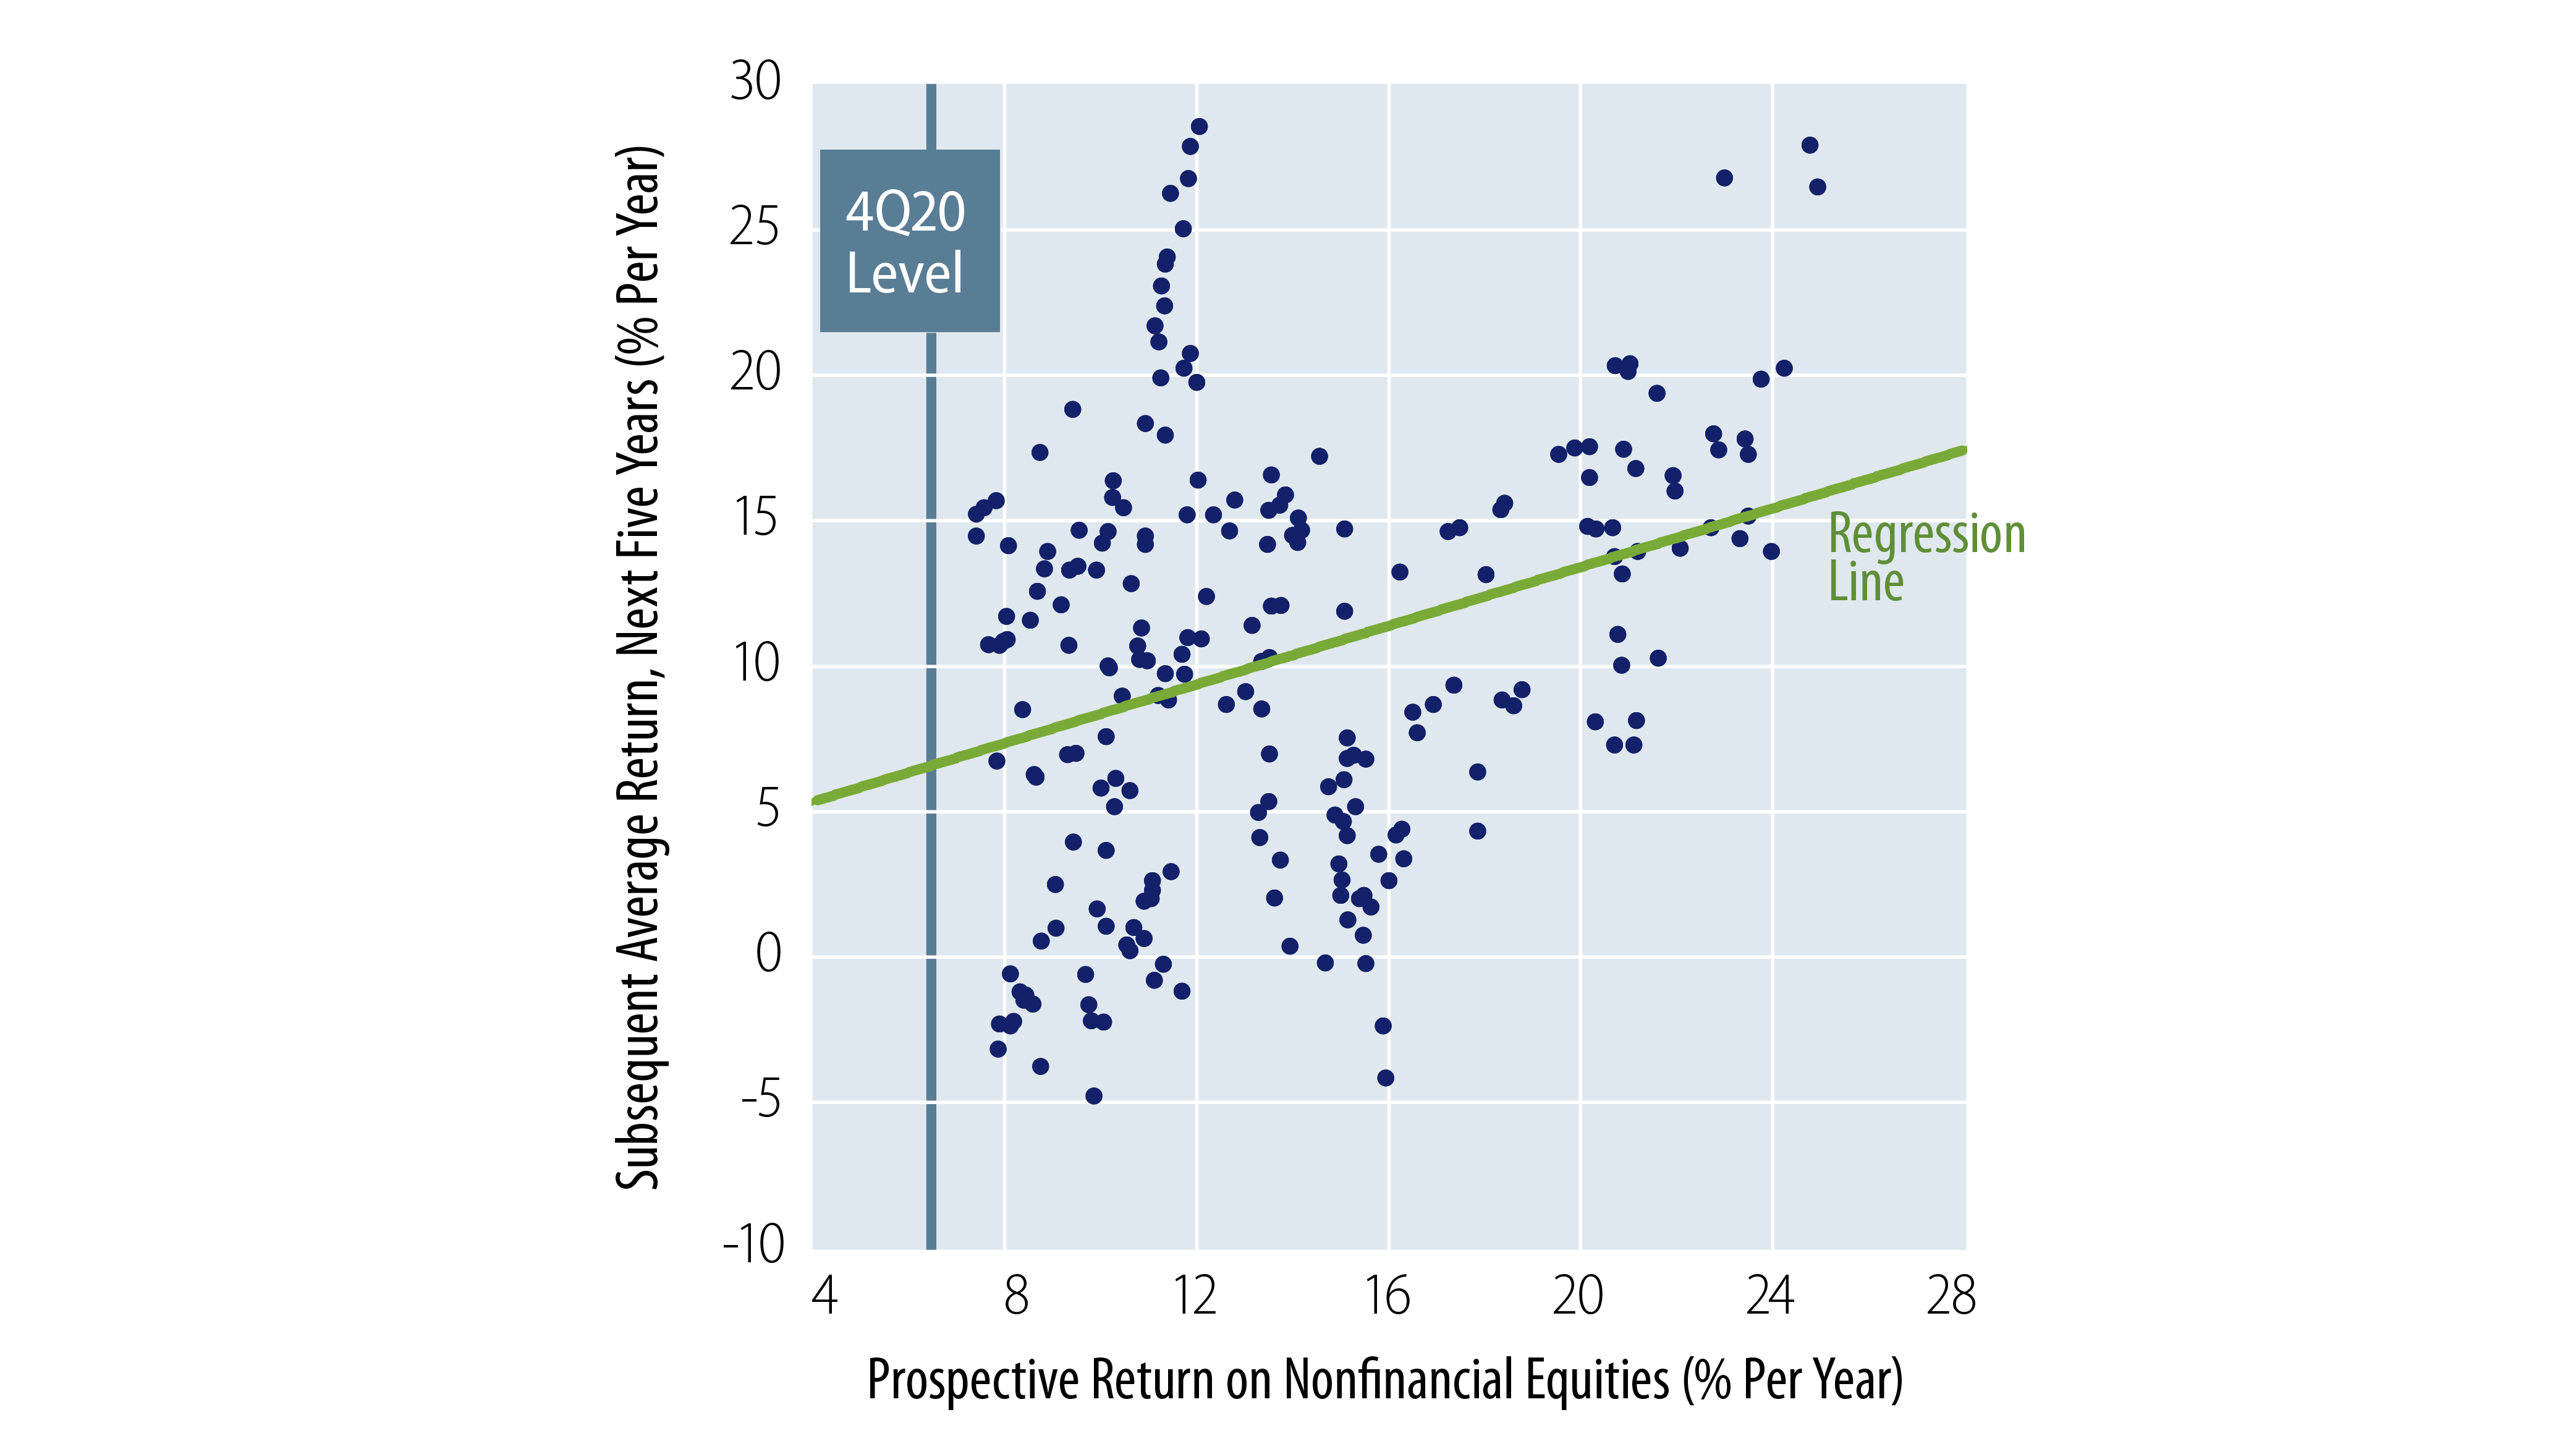 Equity Returns—"Prospective" Versus Actual